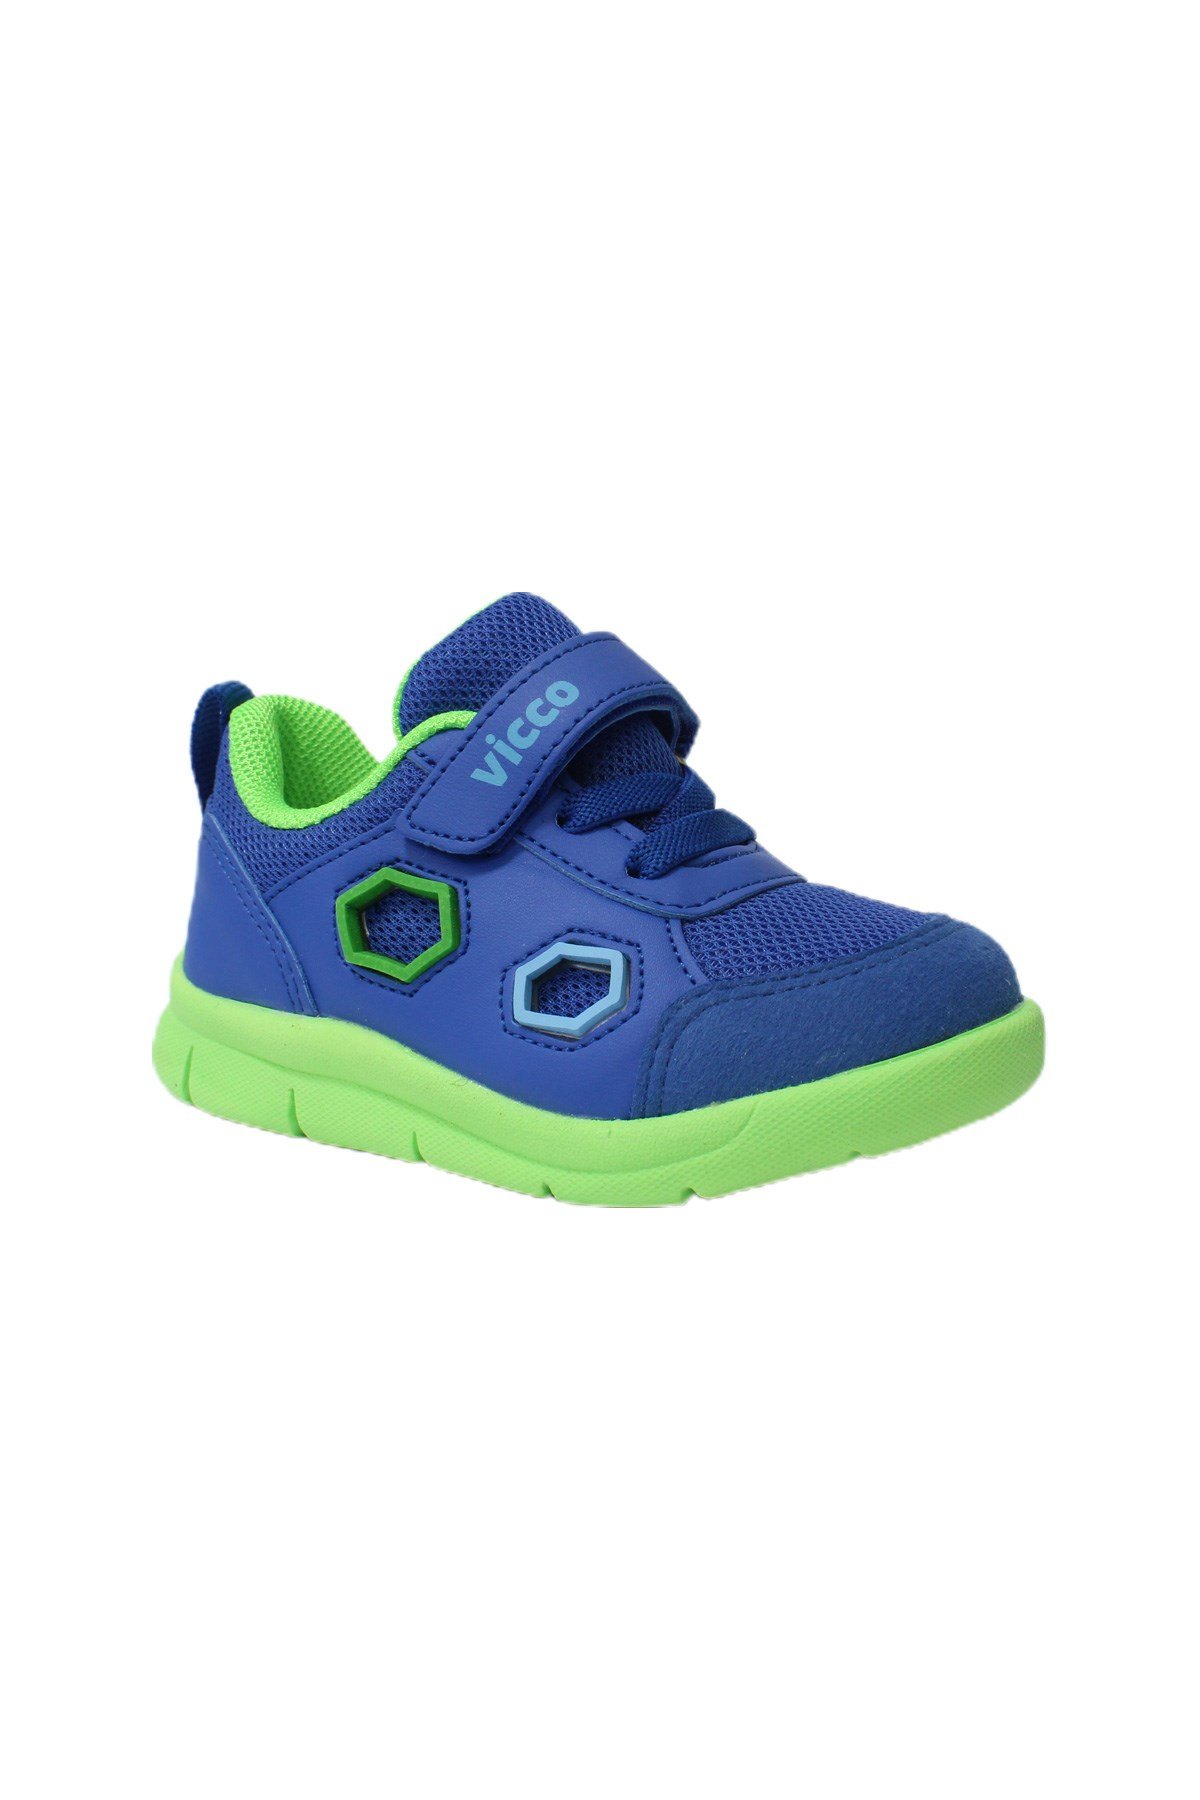 Vicco Juno Bebek Spor Ayakkabısı Mavi | İlhan Paşaoğlu